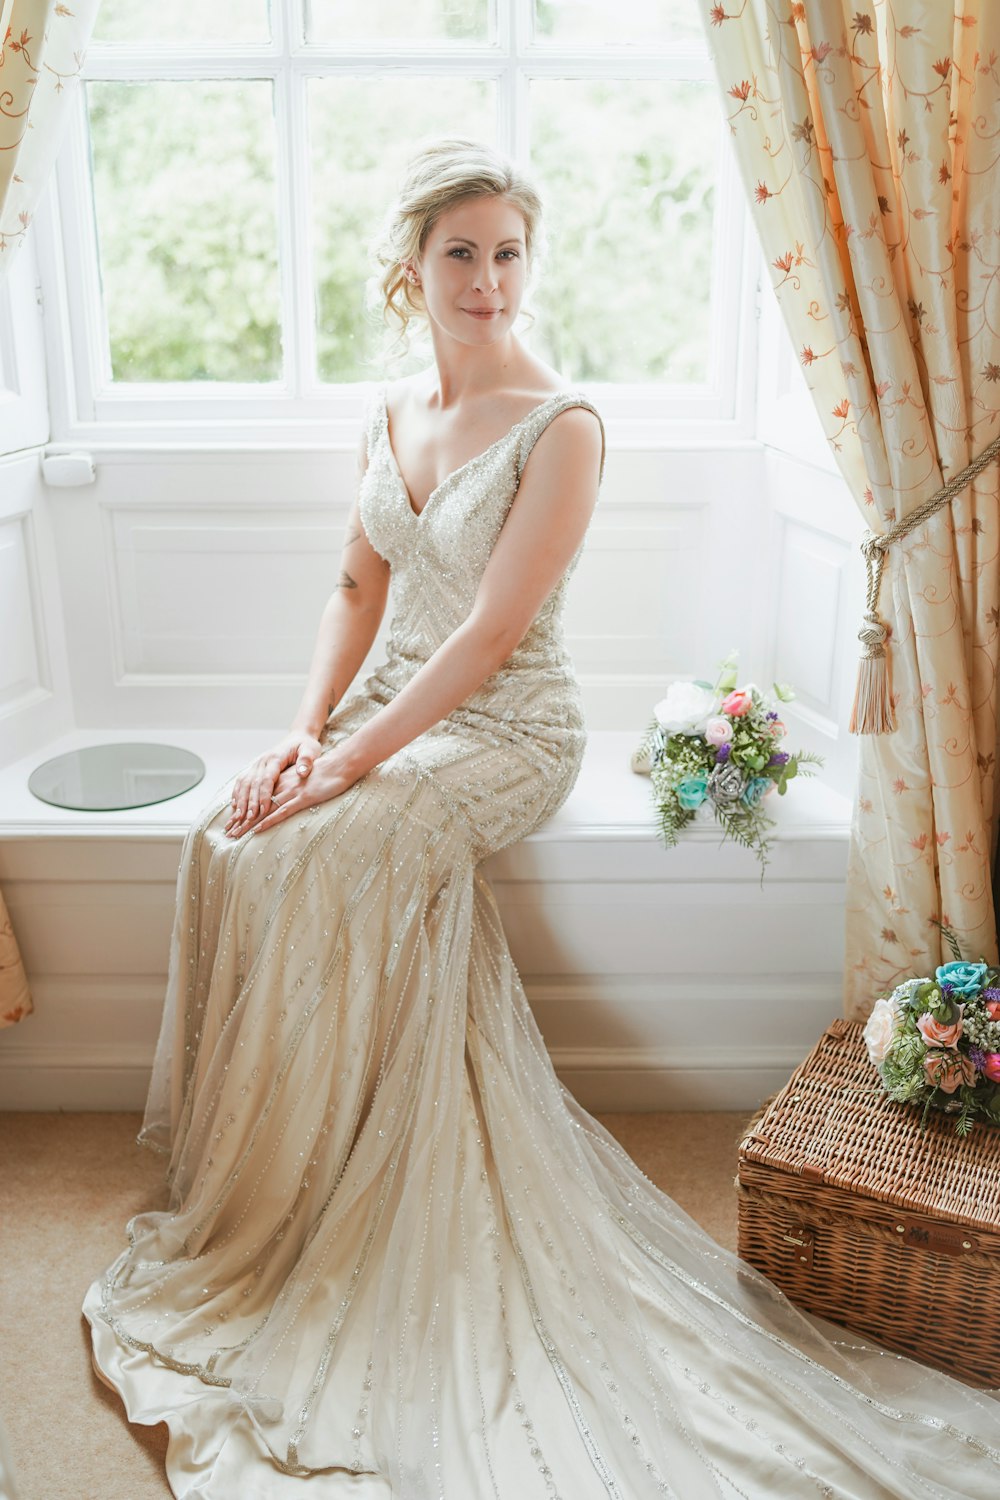 a woman in a wedding dress sitting on a window sill